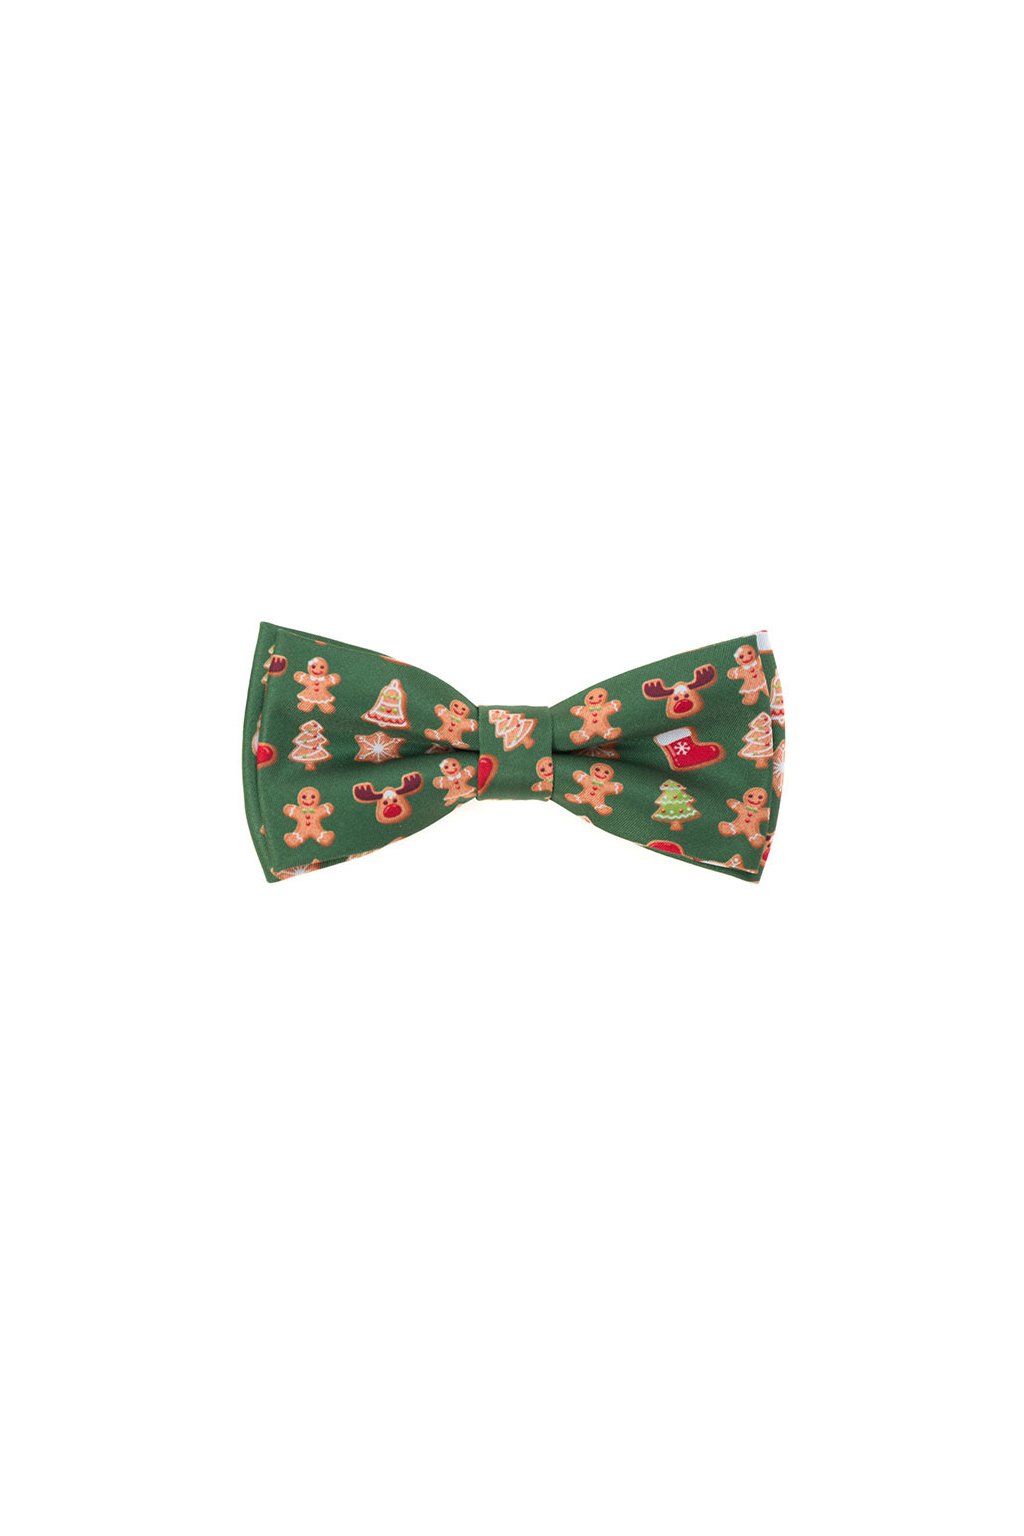 Vánoční motýlek Avantgard s kapesníčkem - zelený / perníček